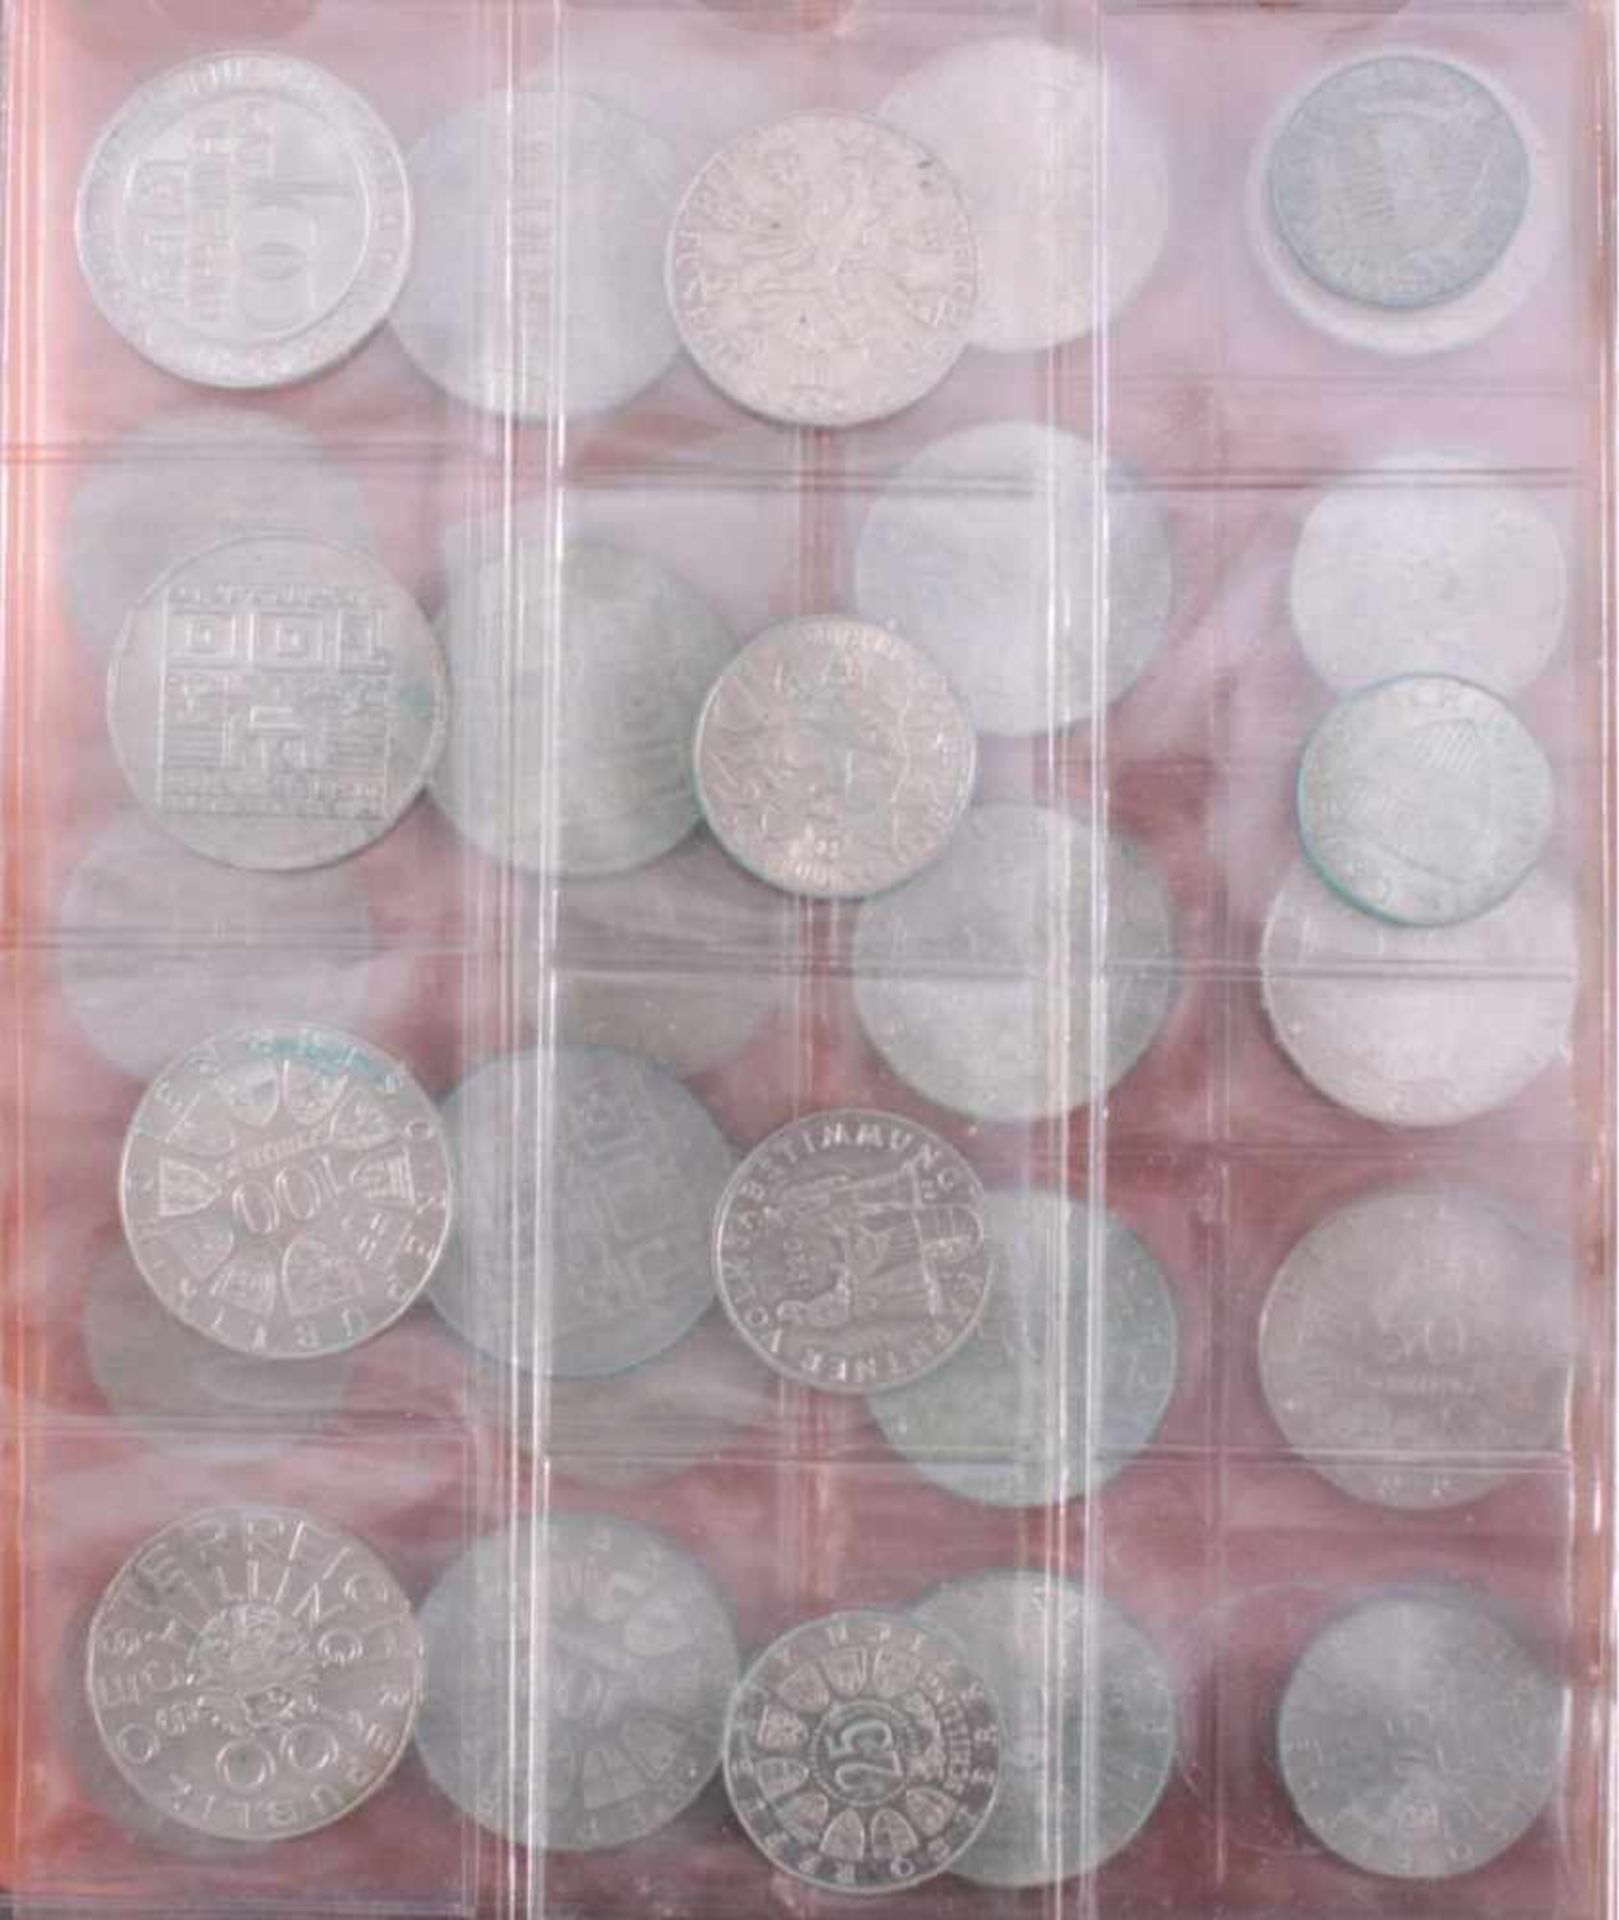 Über 2000 Schilling in SilbermünzenDarunter 100-Schilling, 50-Schilling und 25-Schilling Münzenin - Bild 5 aus 5